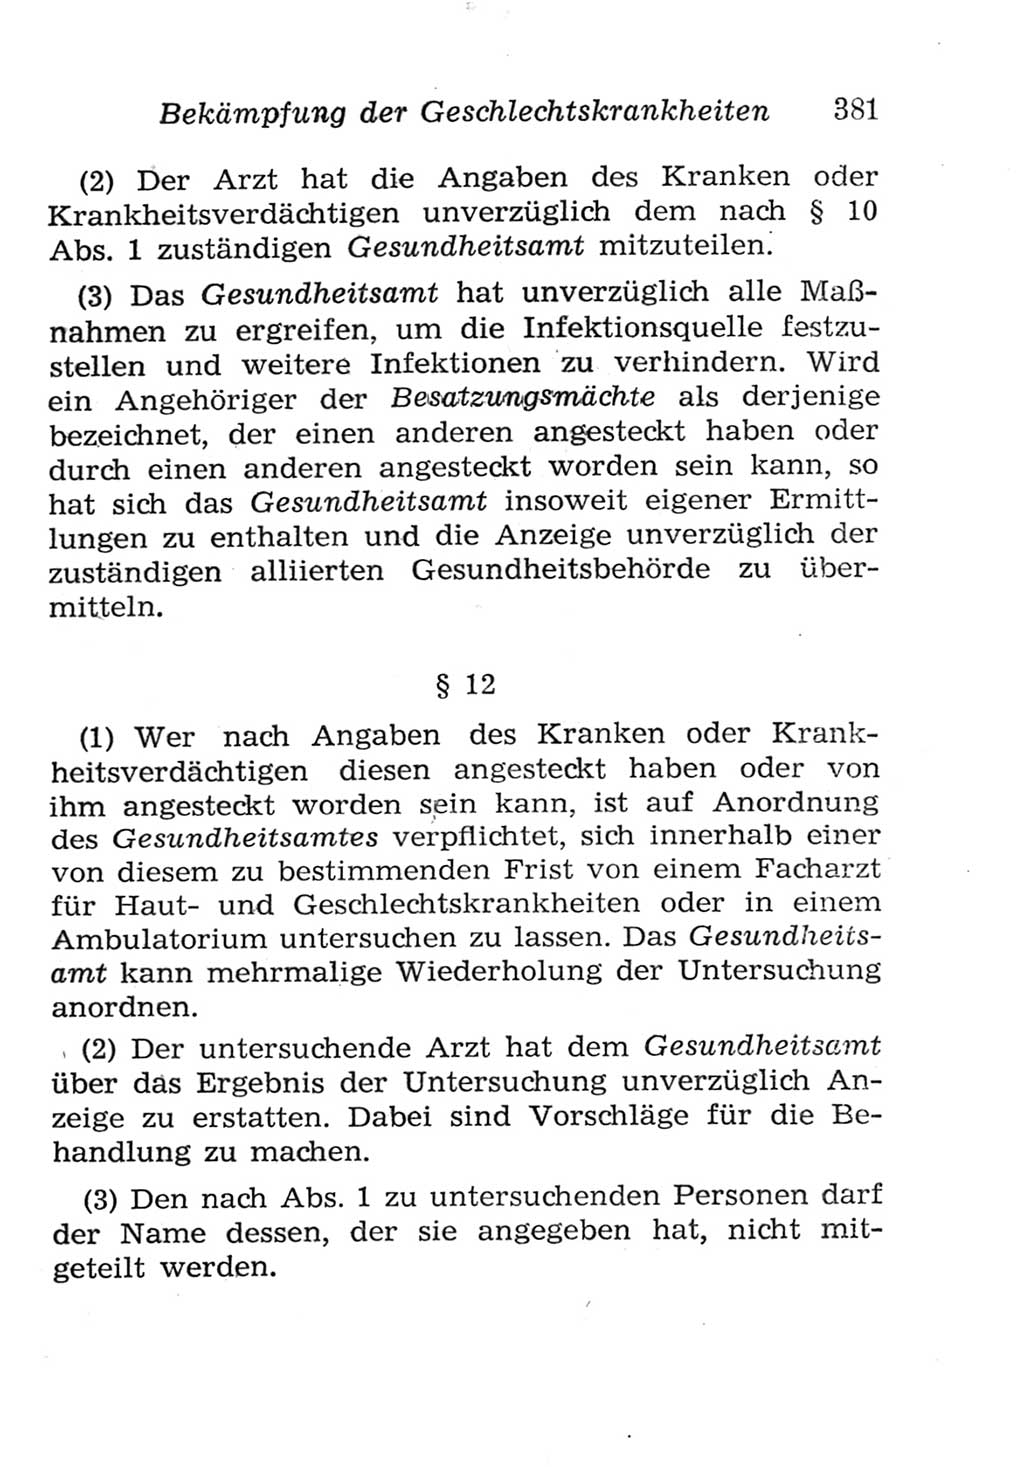 Strafgesetzbuch (StGB) und andere Strafgesetze [Deutsche Demokratische Republik (DDR)] 1957, Seite 381 (StGB Strafges. DDR 1957, S. 381)